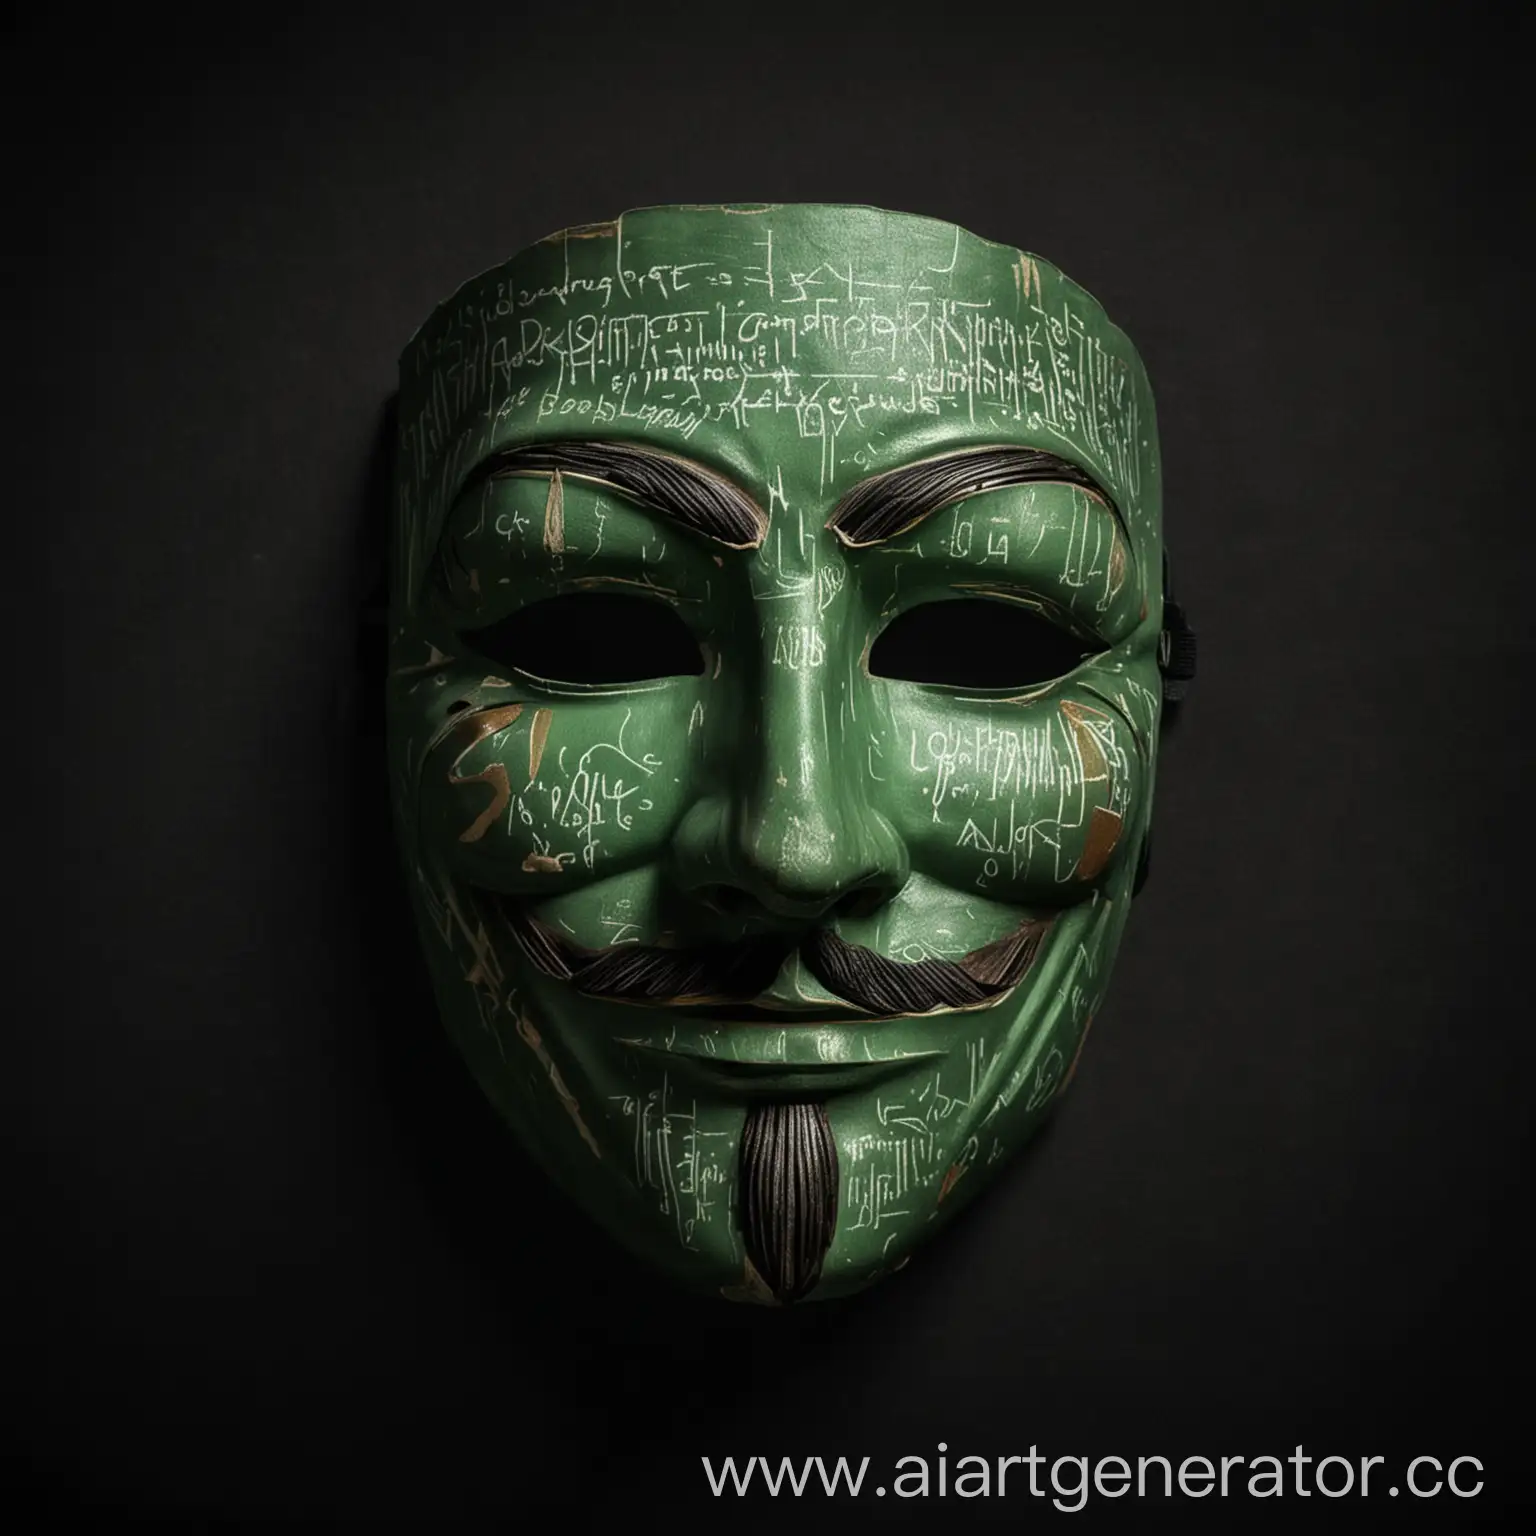 маска анонимуса на чëрном фоне а рядом зелëный цвет а сверху написано Anonymus History
